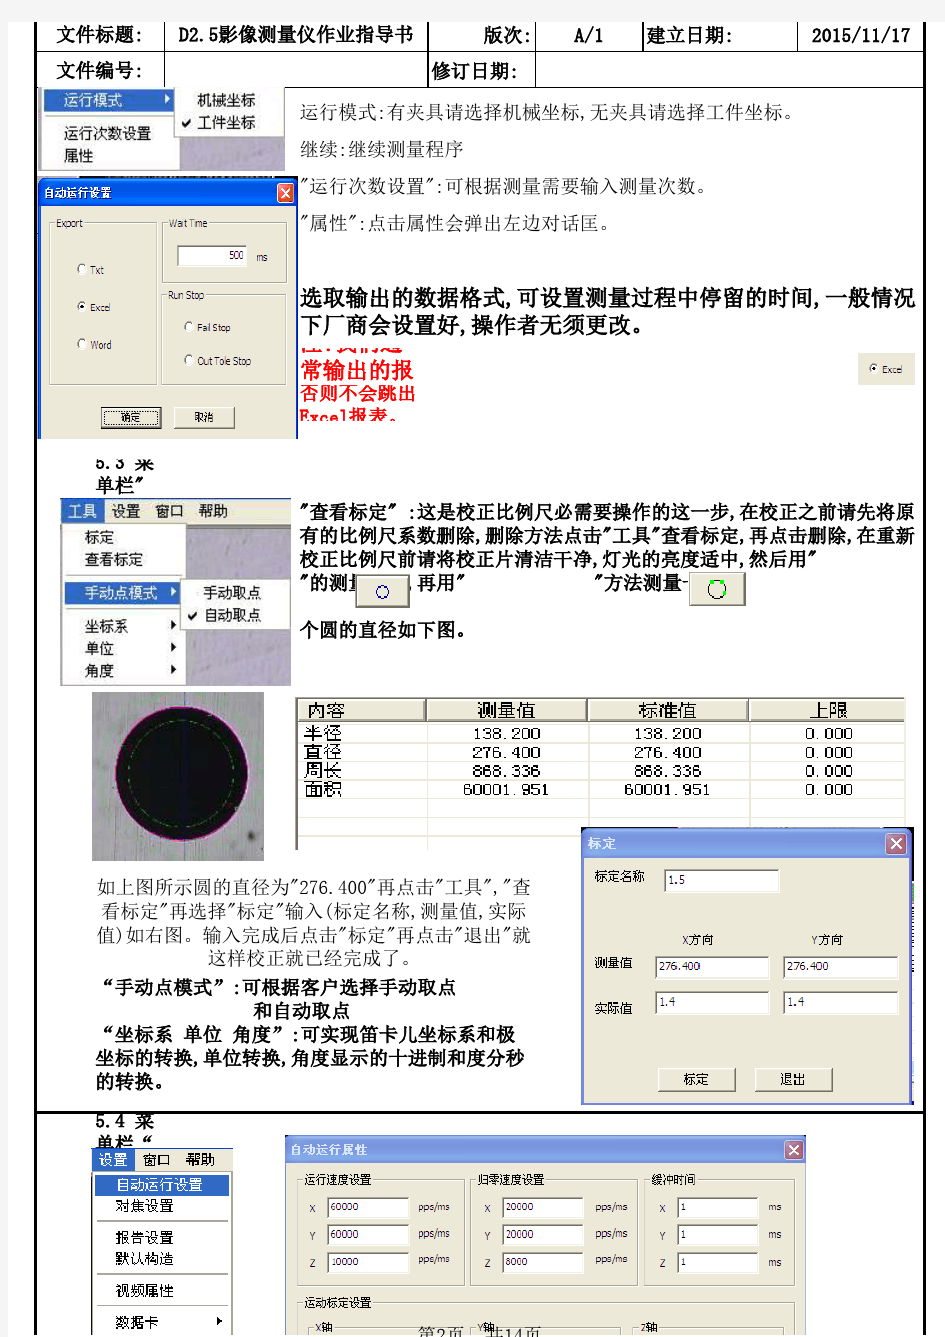 D2.5影像测量仪作业指导书